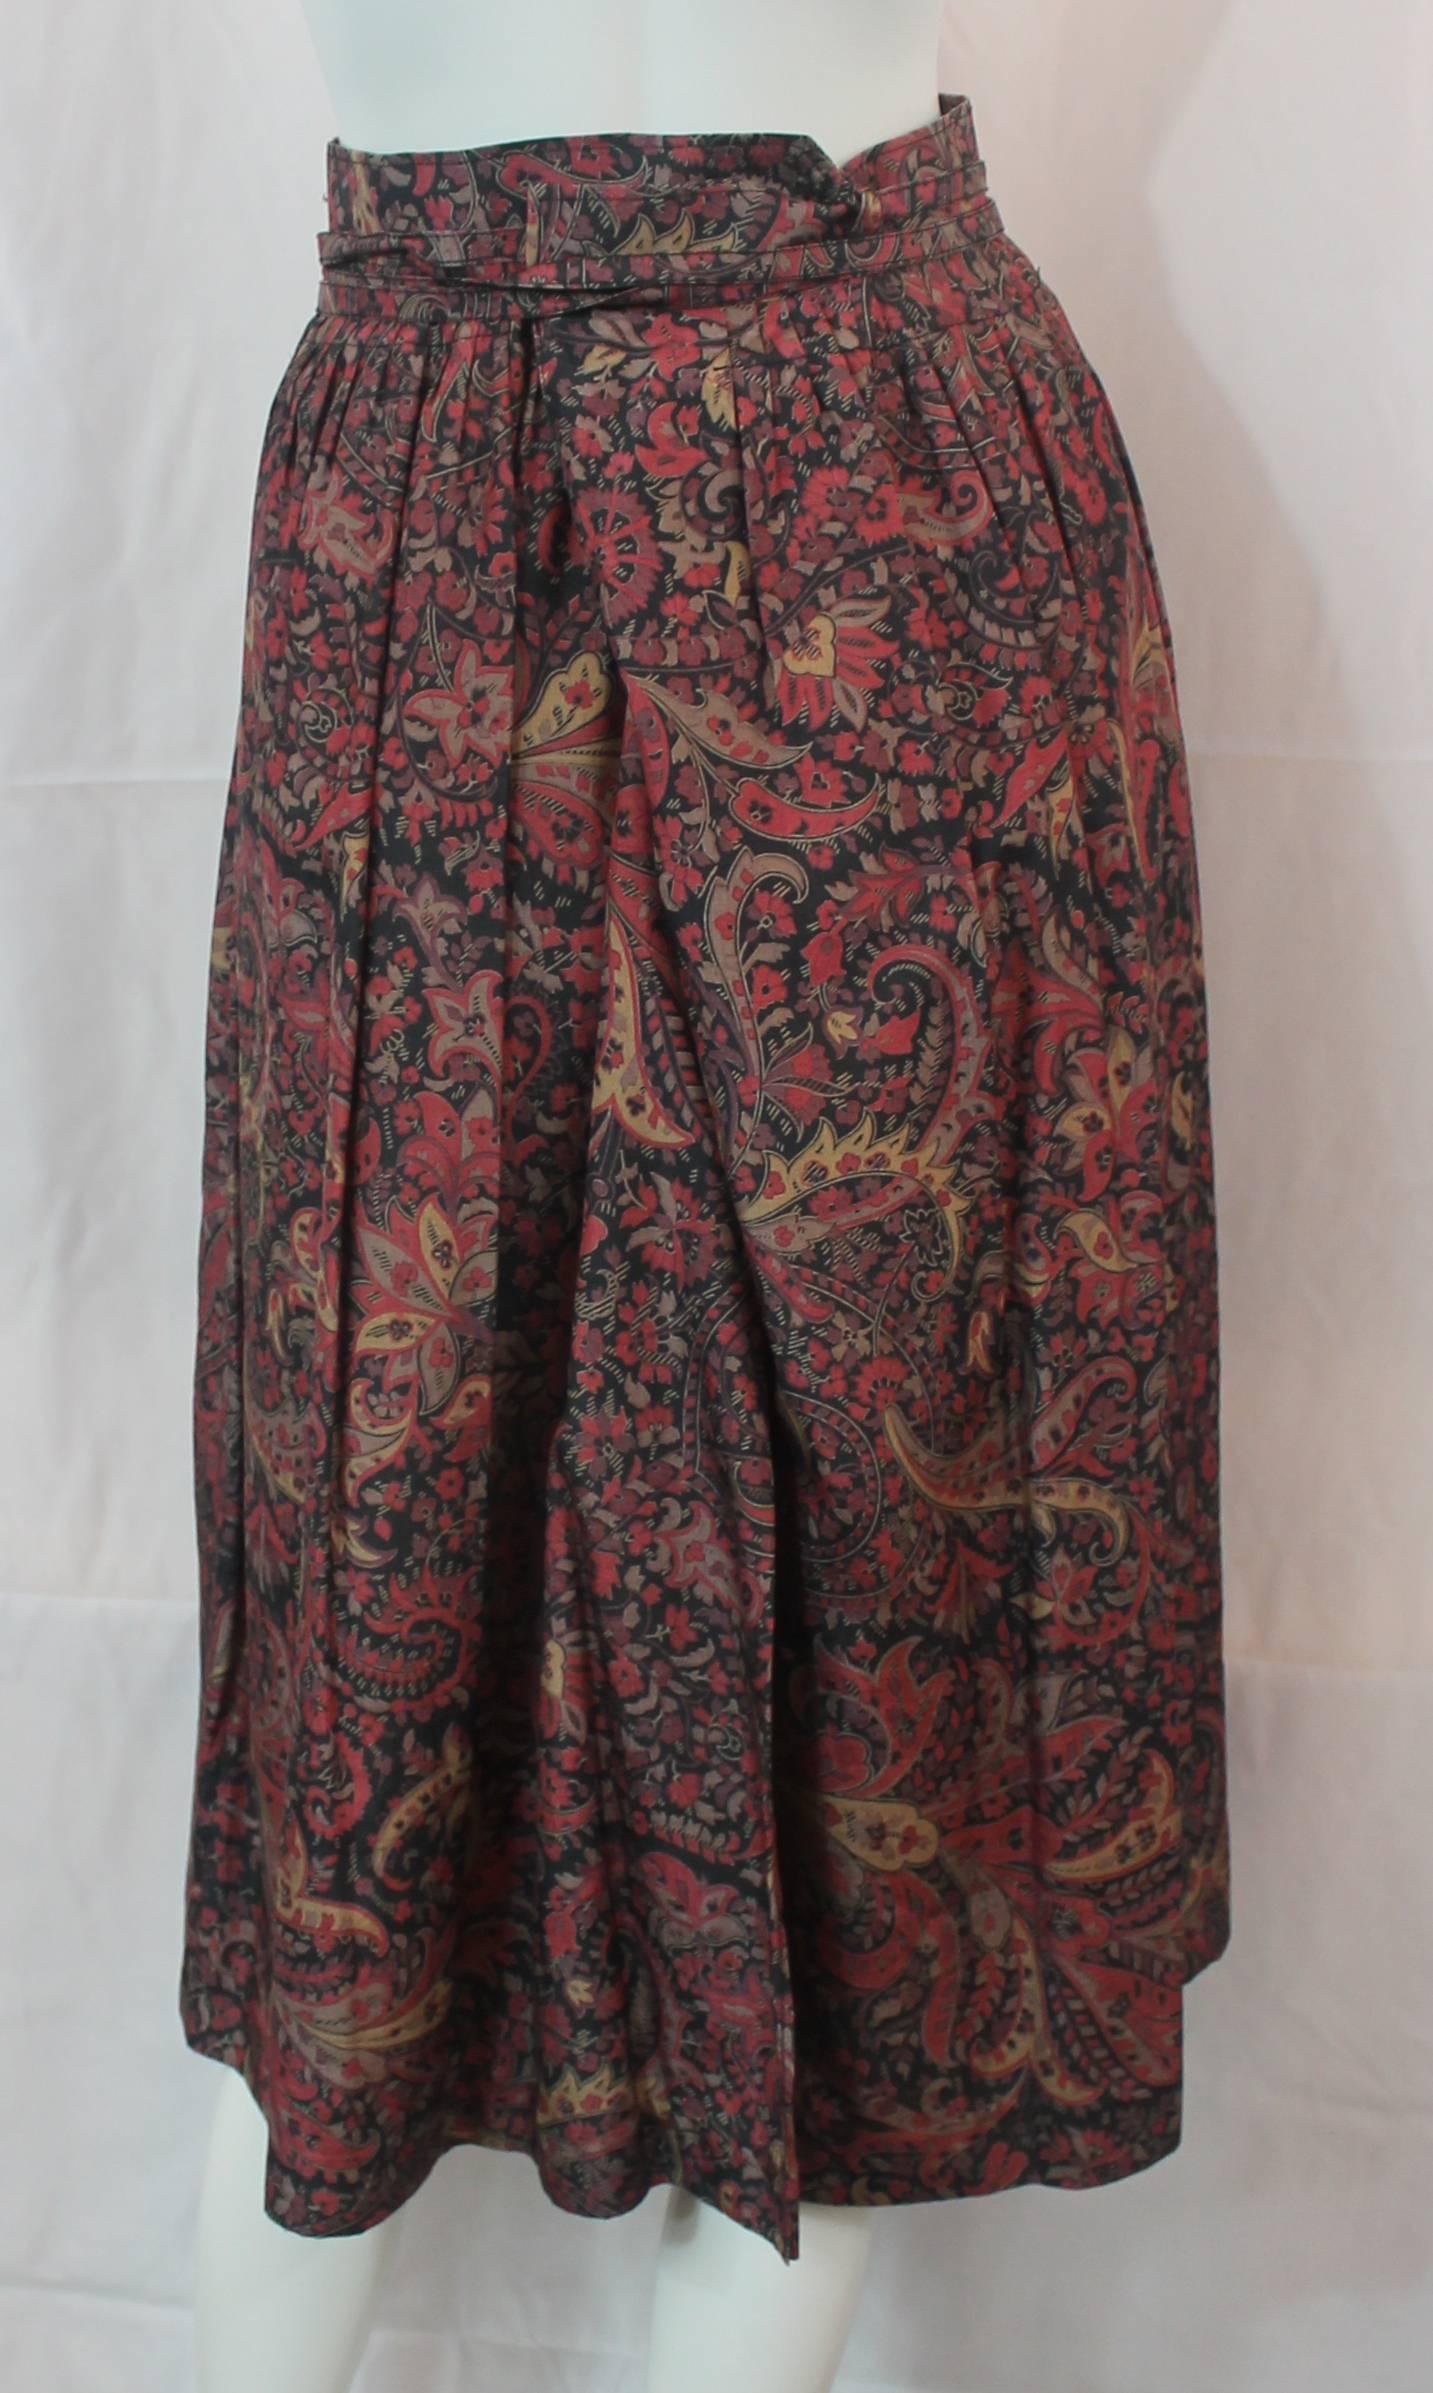 Black Bogner Vintage Multi-Colored Floral Print Silk Wrap Skirt - 38 - 1990's